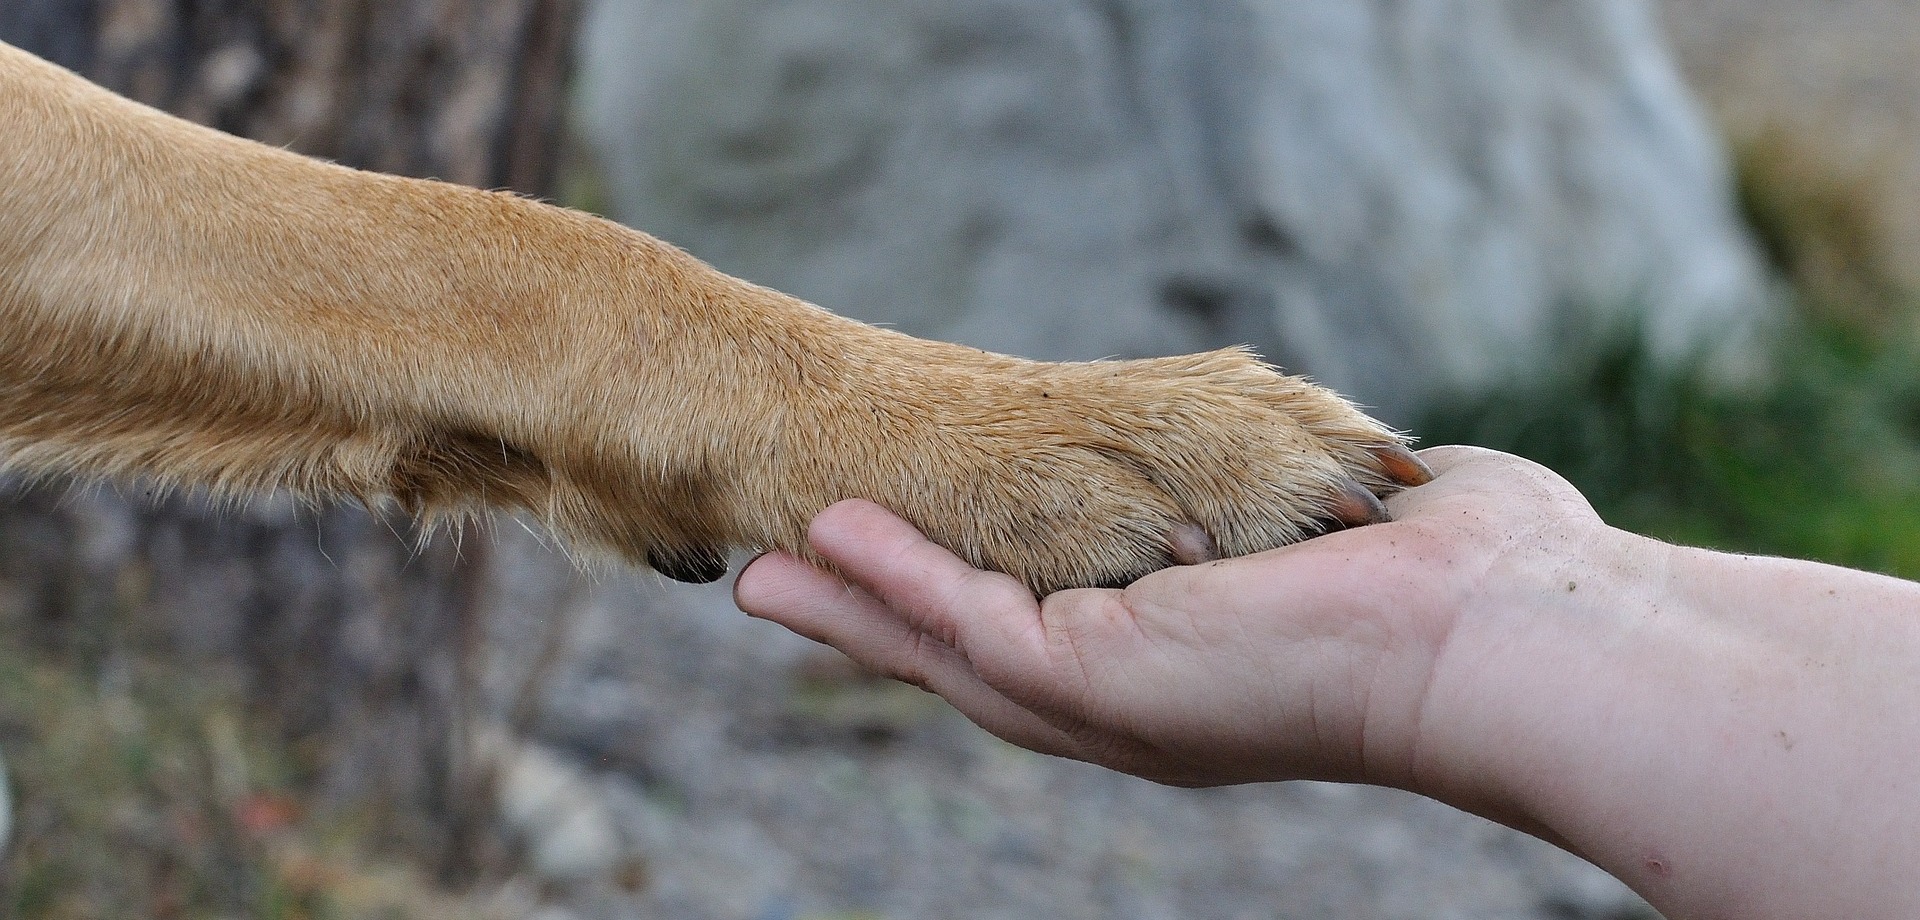 Mascotas Reva, bonita foto de una pata dando la mano a alguien, simboliza la mistad entre los caninos y las personas